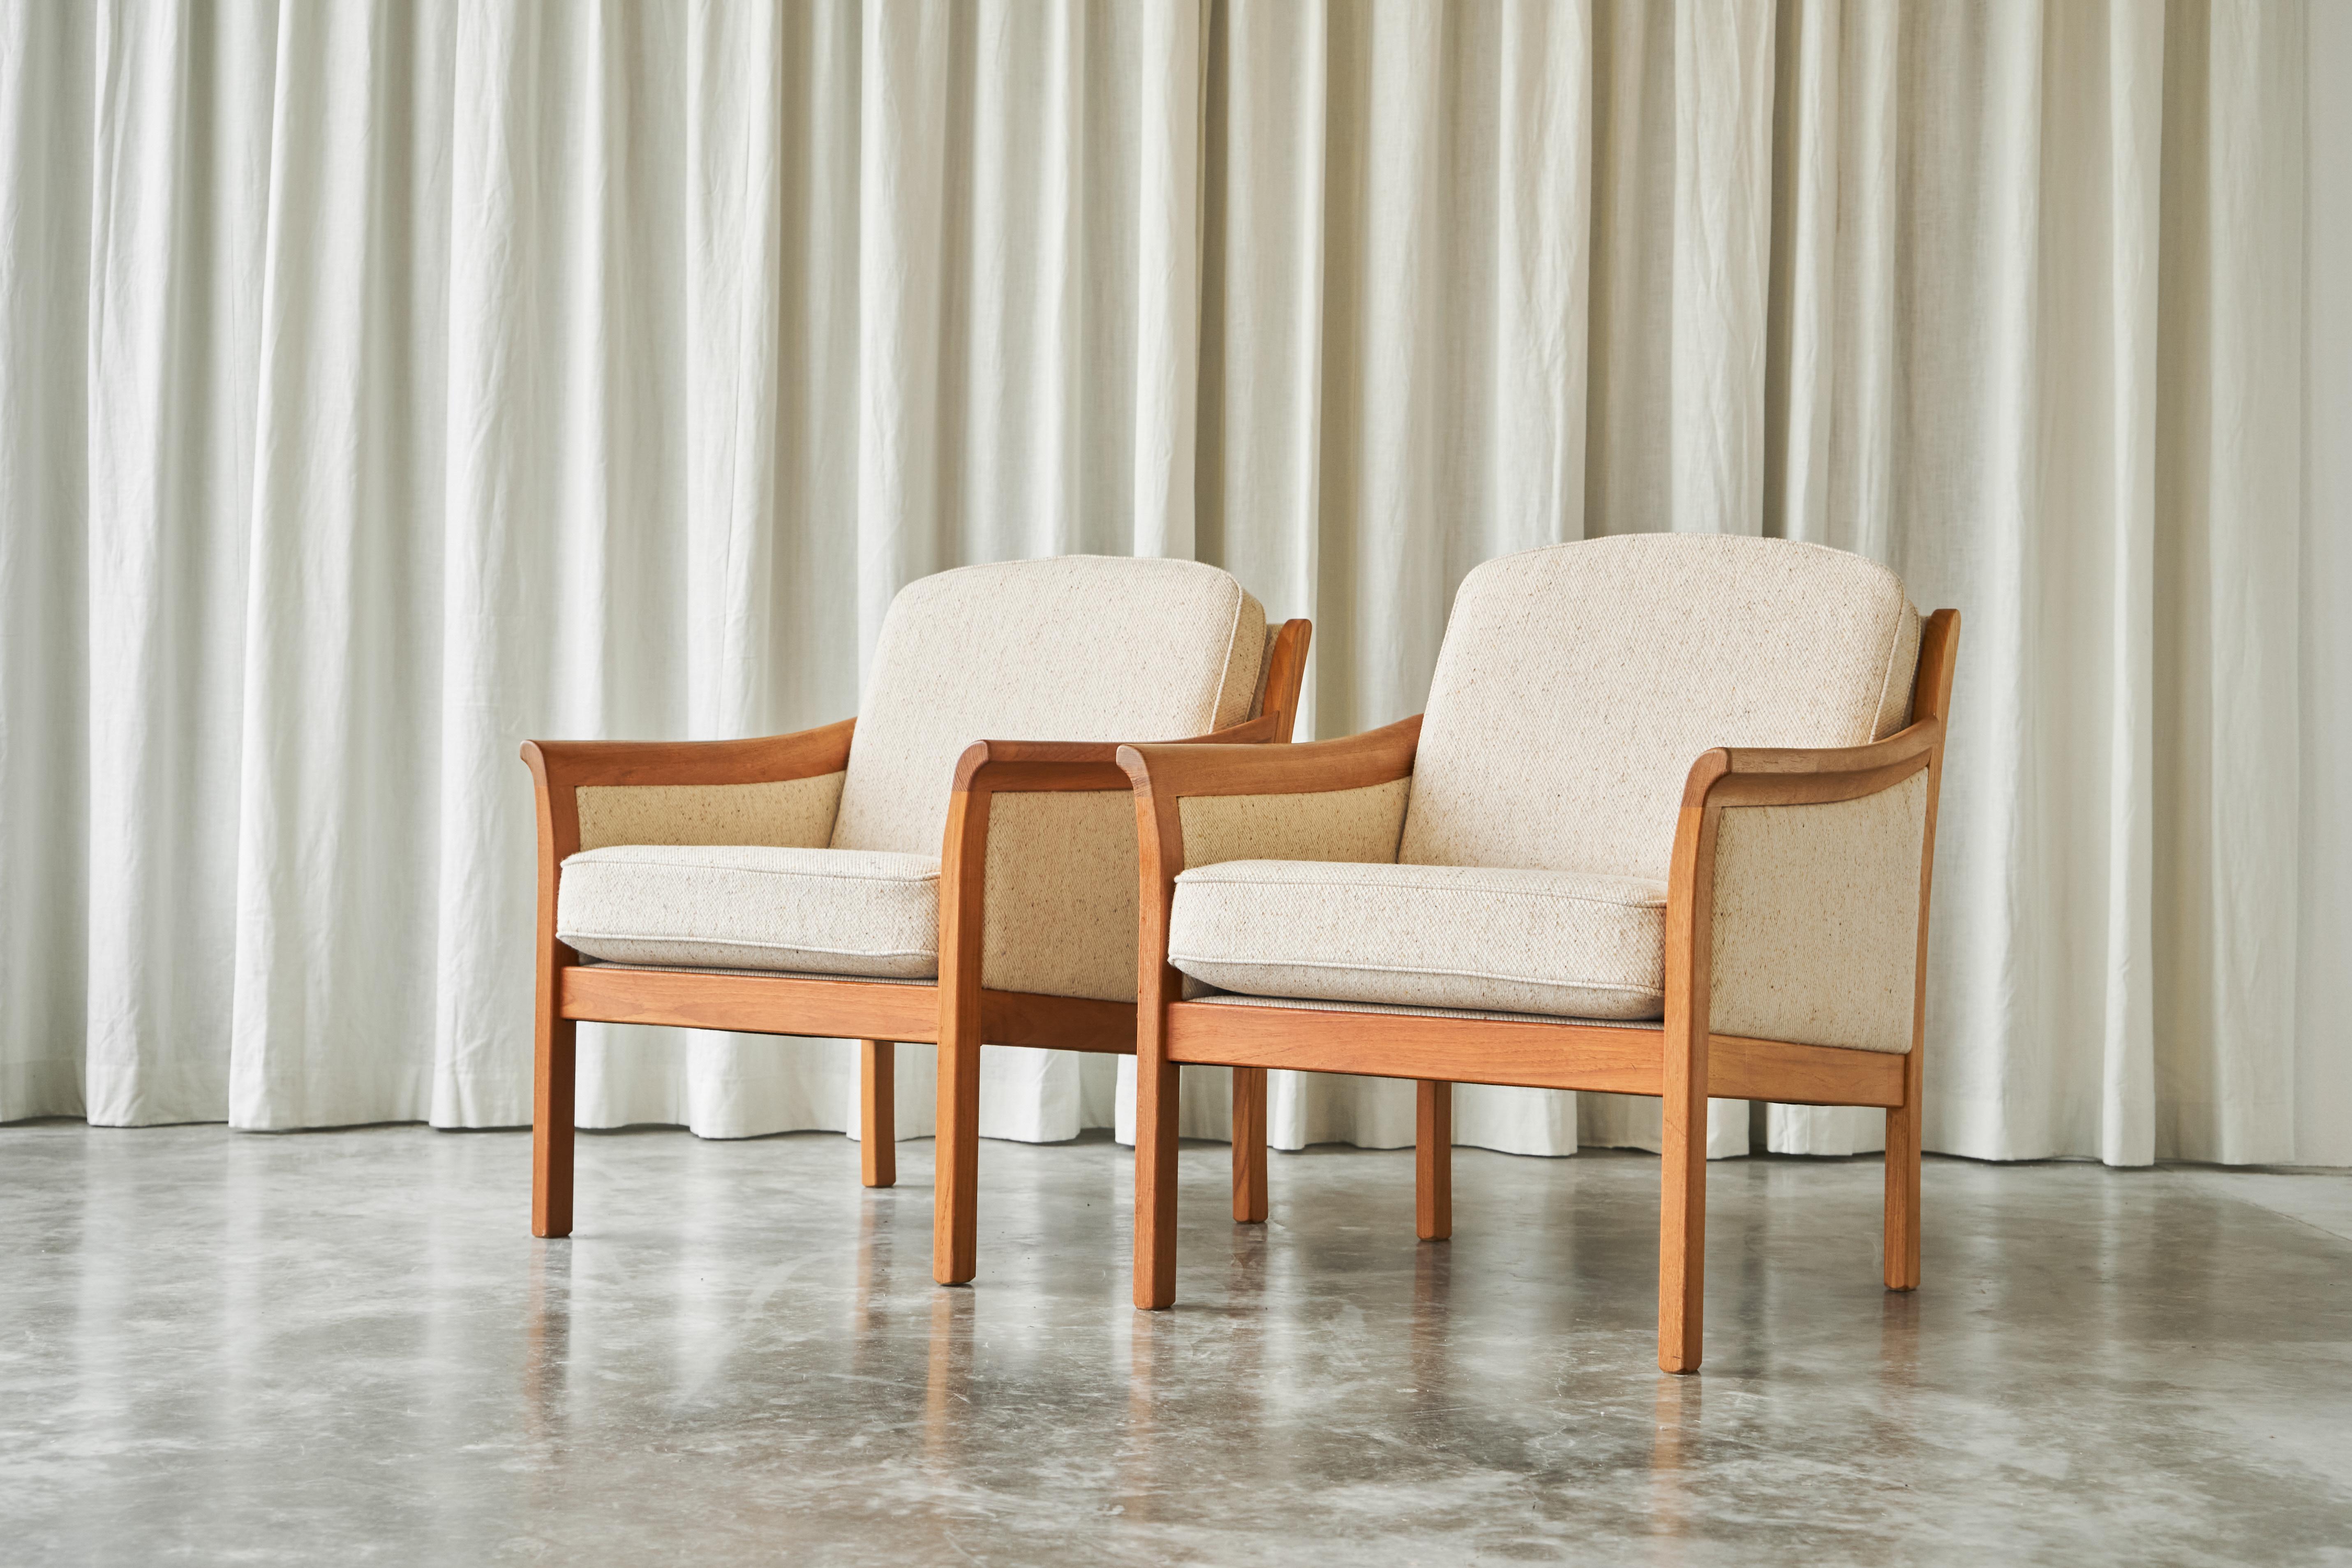 Paire de chaises longues scandinaves en laine avec un ottoman, Scandinavie, années 1960.

Il s'agit d'une paire de chaises longues très élégantes de Scandinavie avec un ottoman. Ces chaises longues scandinaves ont été fabriquées au milieu du XXe